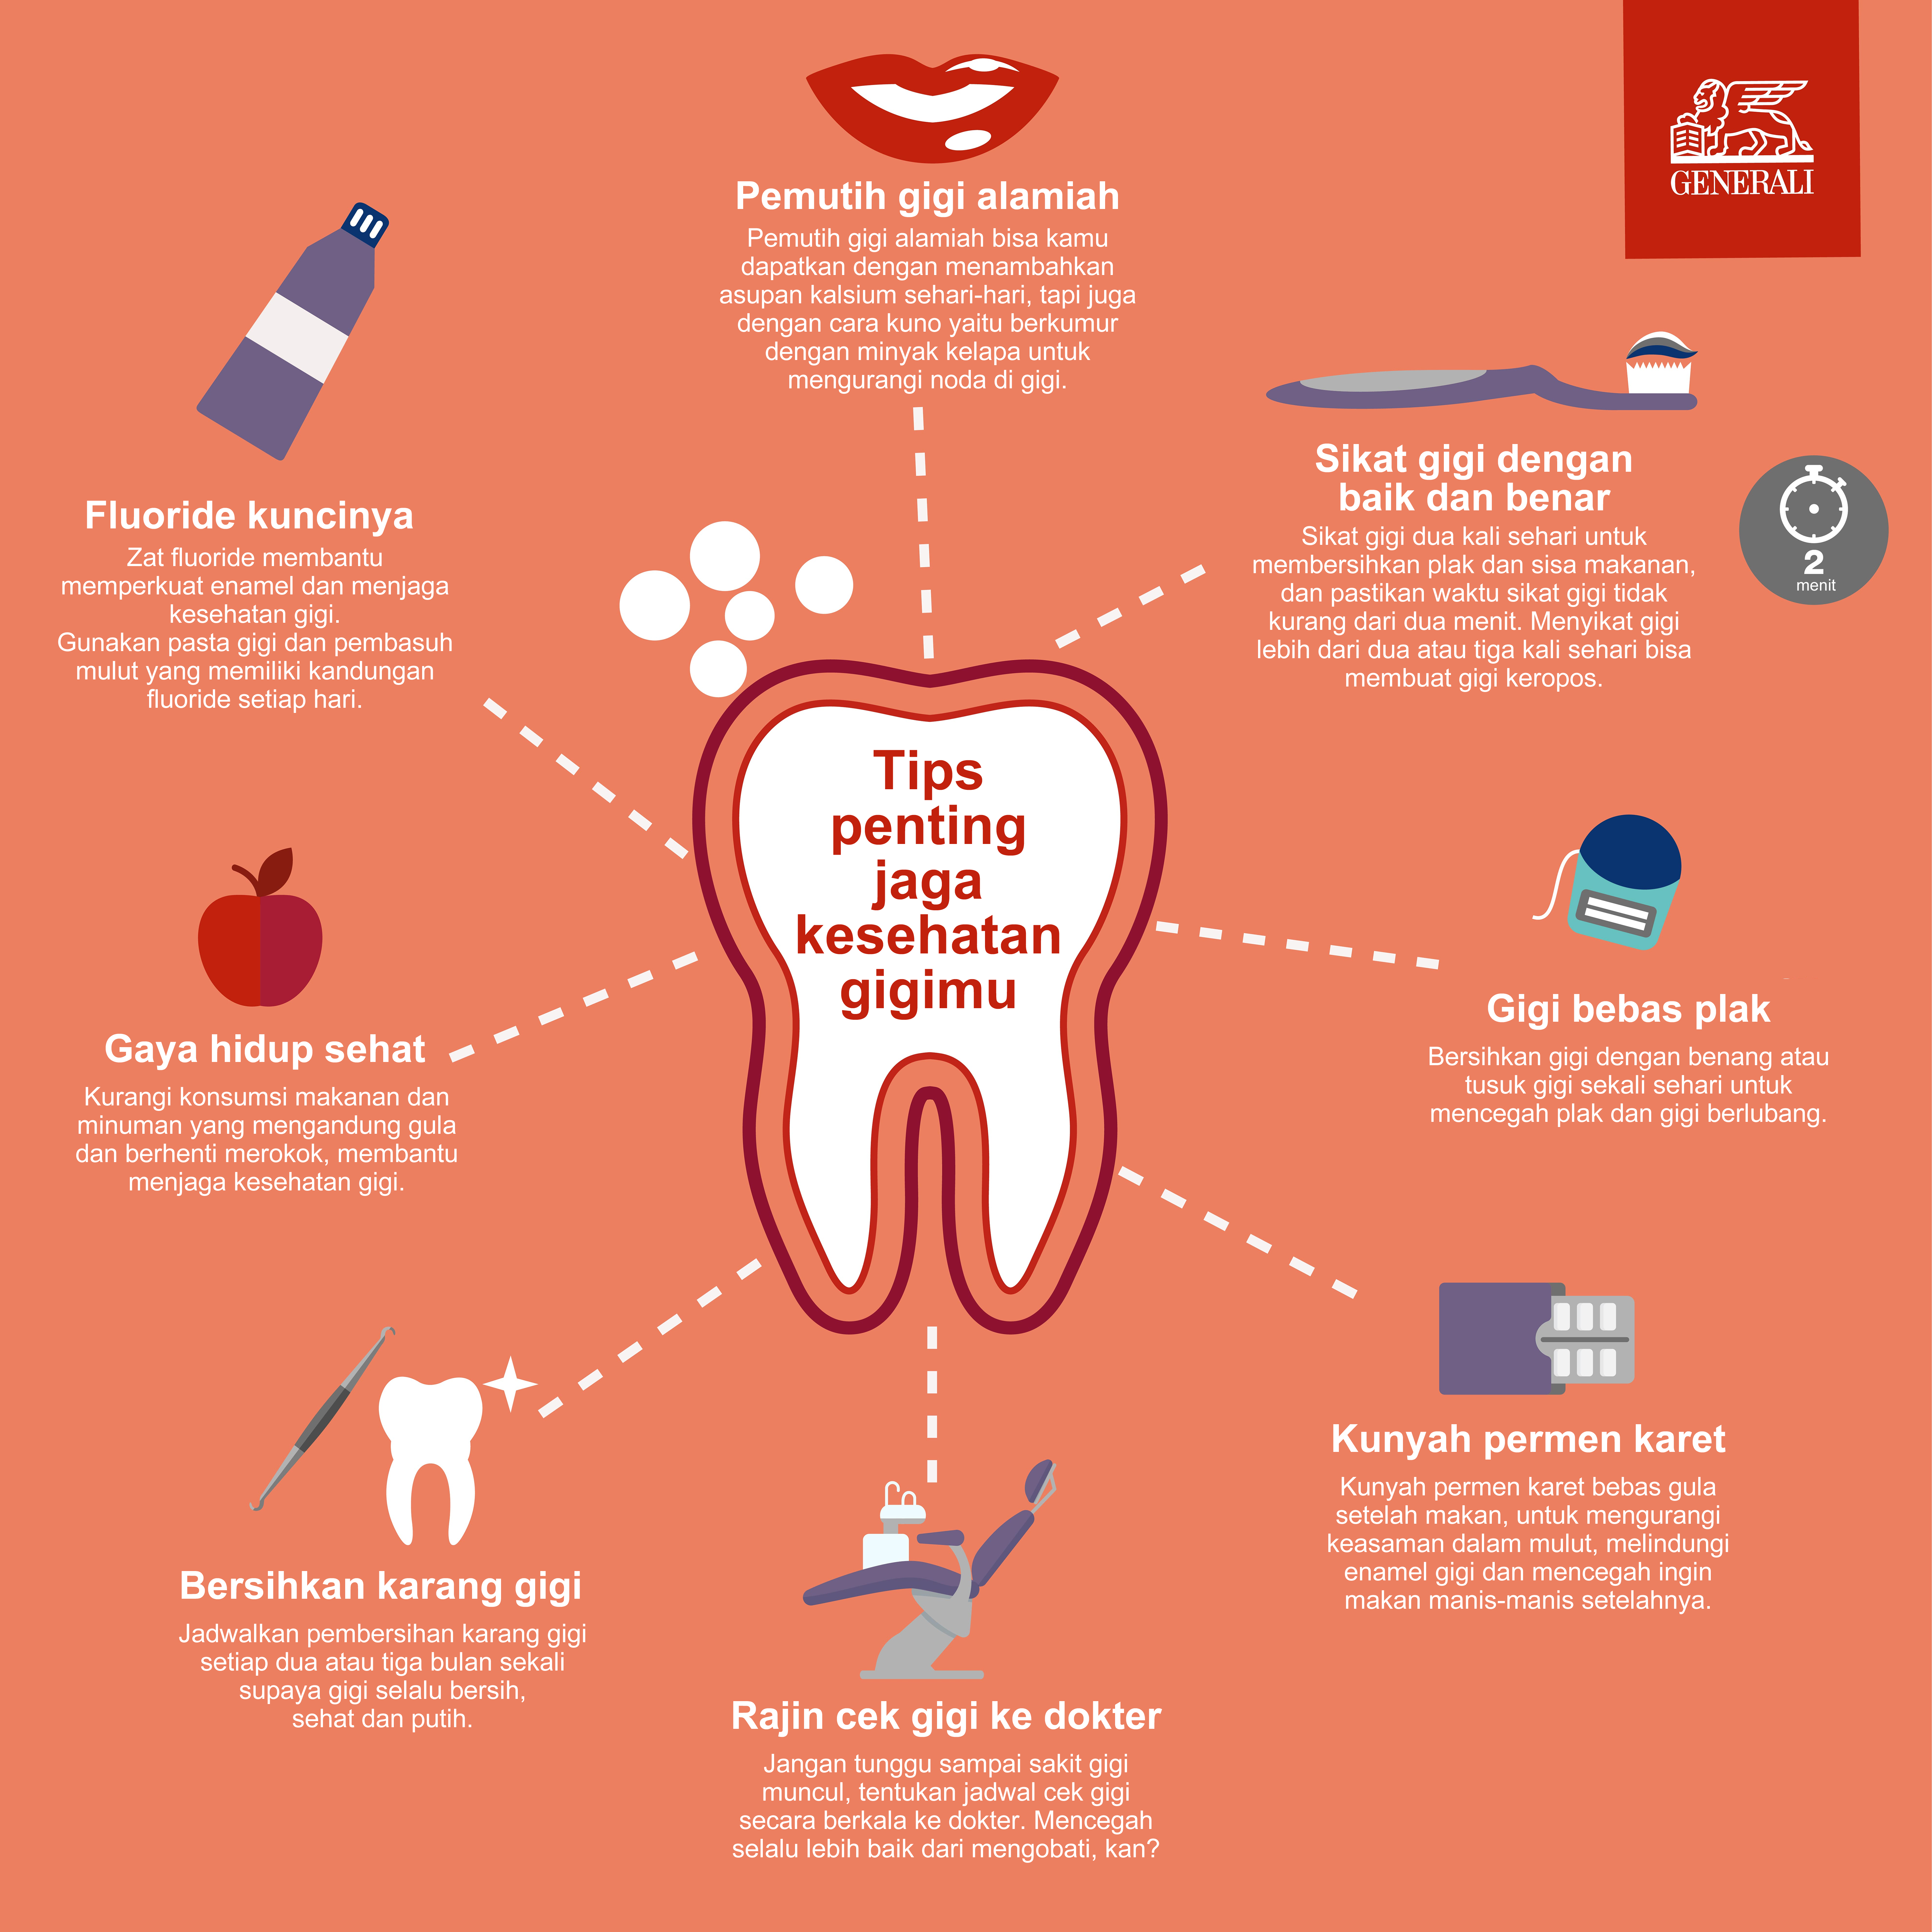 Tips penting jaga kesehatan gigi